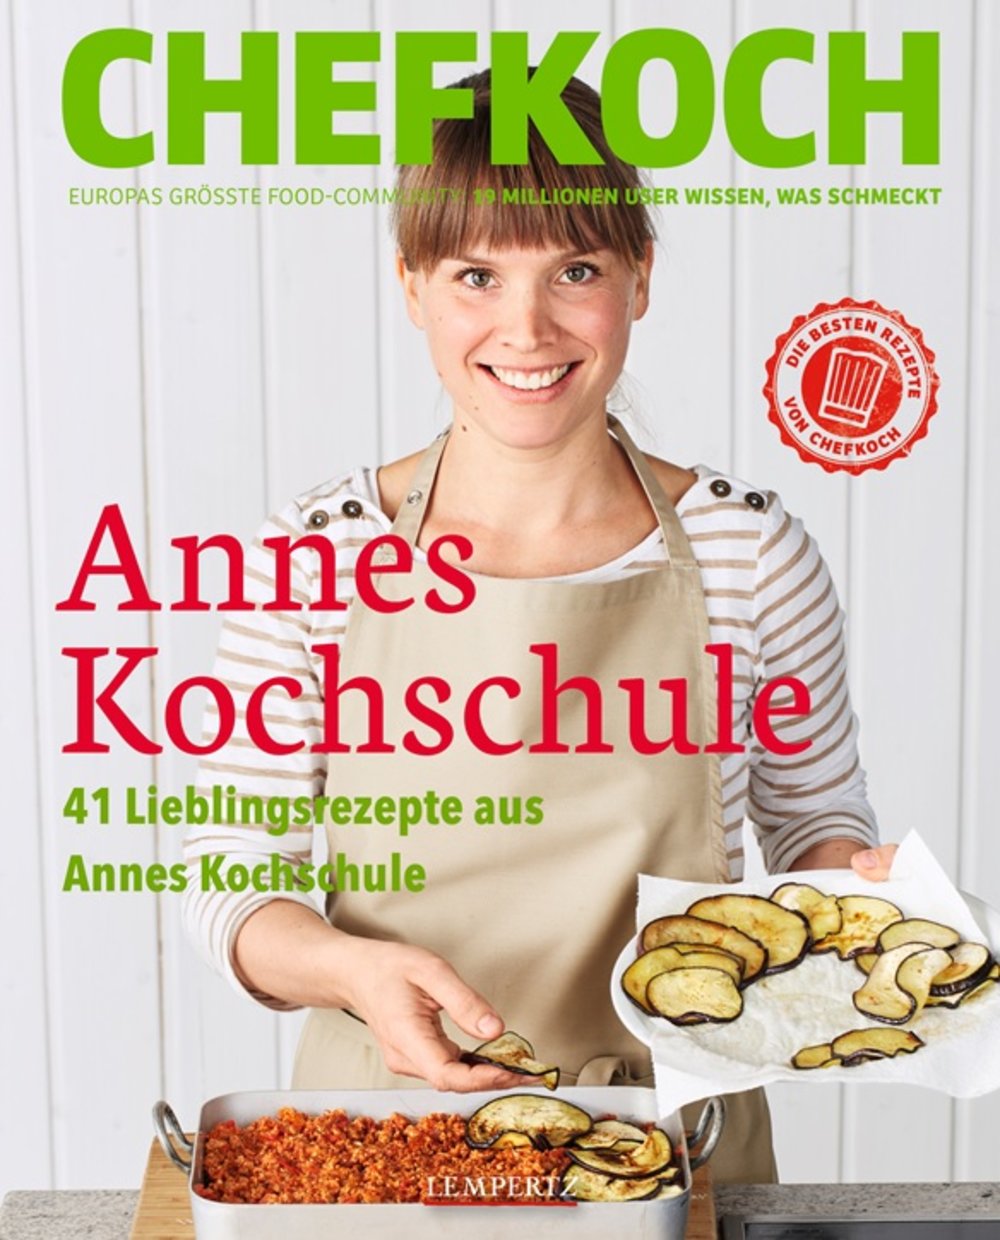 CHEFKOCH Buch "Annes Kochschule"